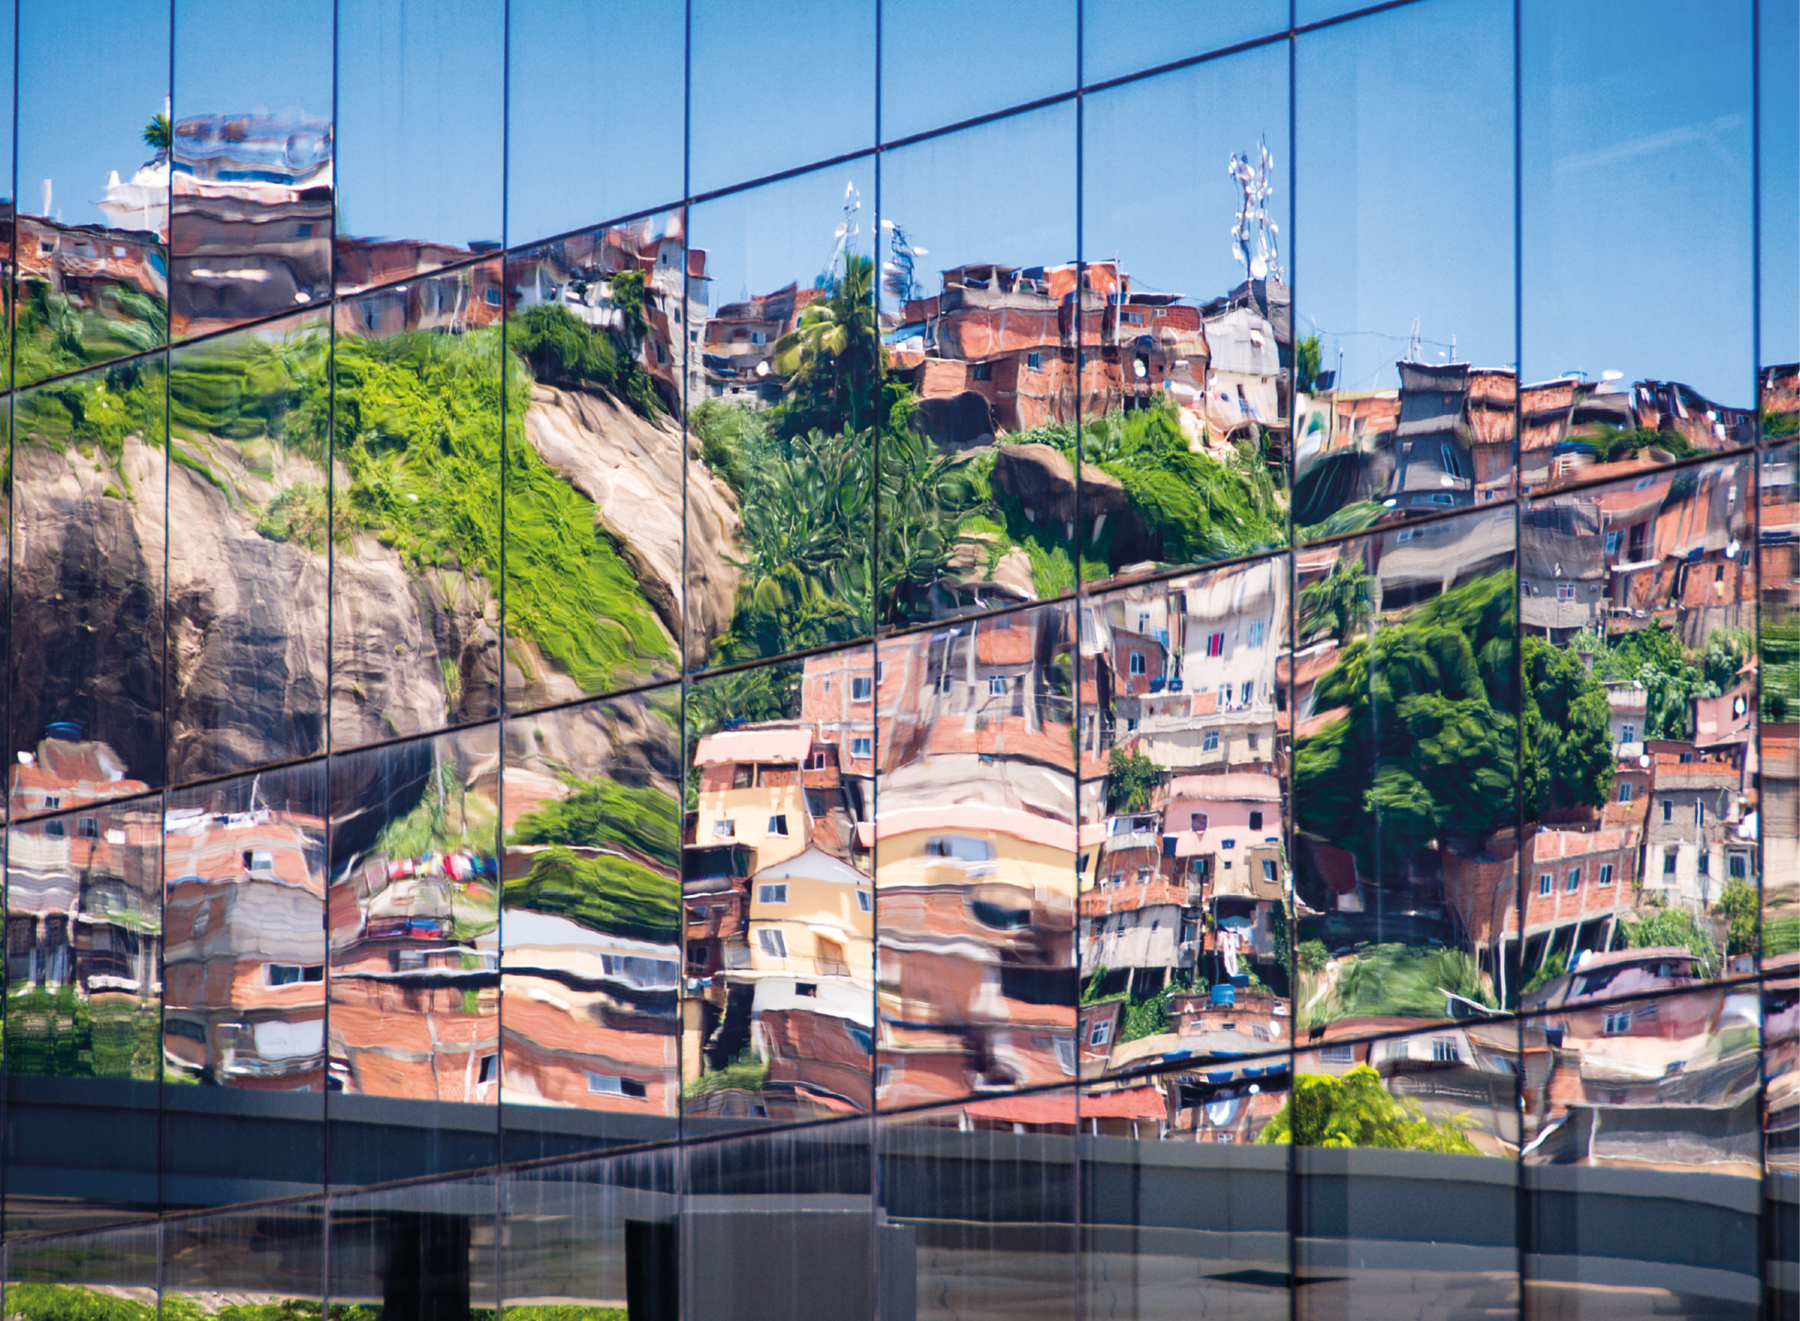 Fotografia. Vista frontal de prédio composto por vidros espelhados refletindo a imagem de um morro com casas de tijolos e abaixo, uma ponte. No centro, as imagens nos espelhos estão um pouco distorcidas.